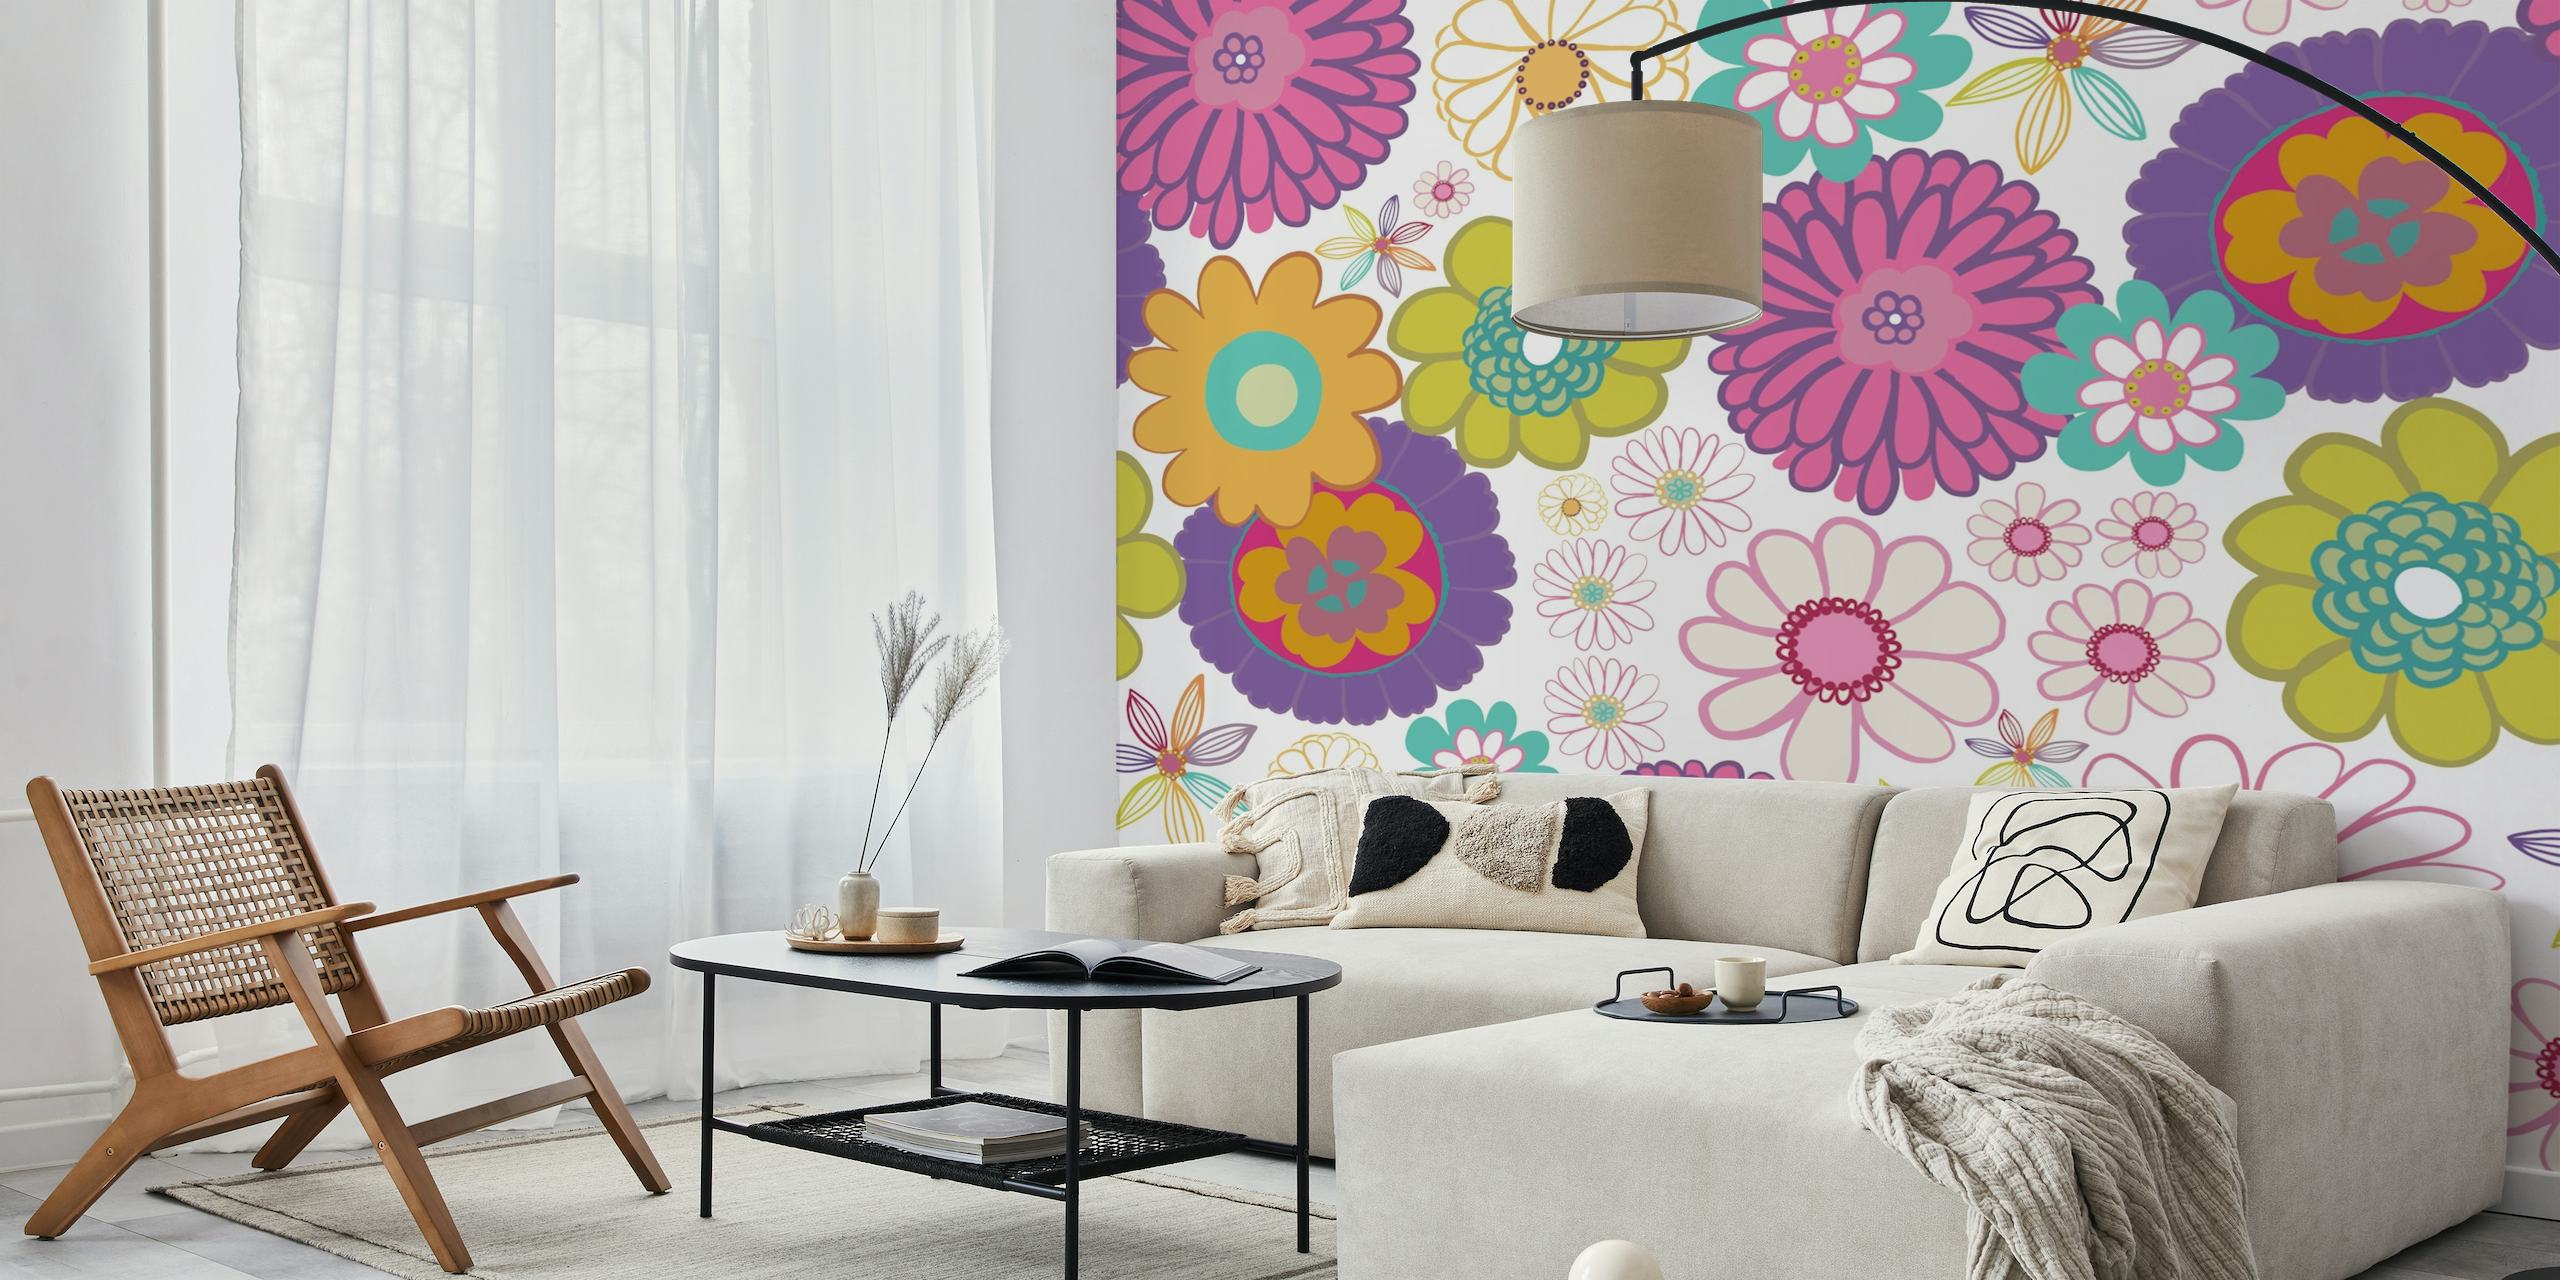 Fotomural vinílico de parede colorido com padrão floral e uma mistura de estilos vintage e moderno